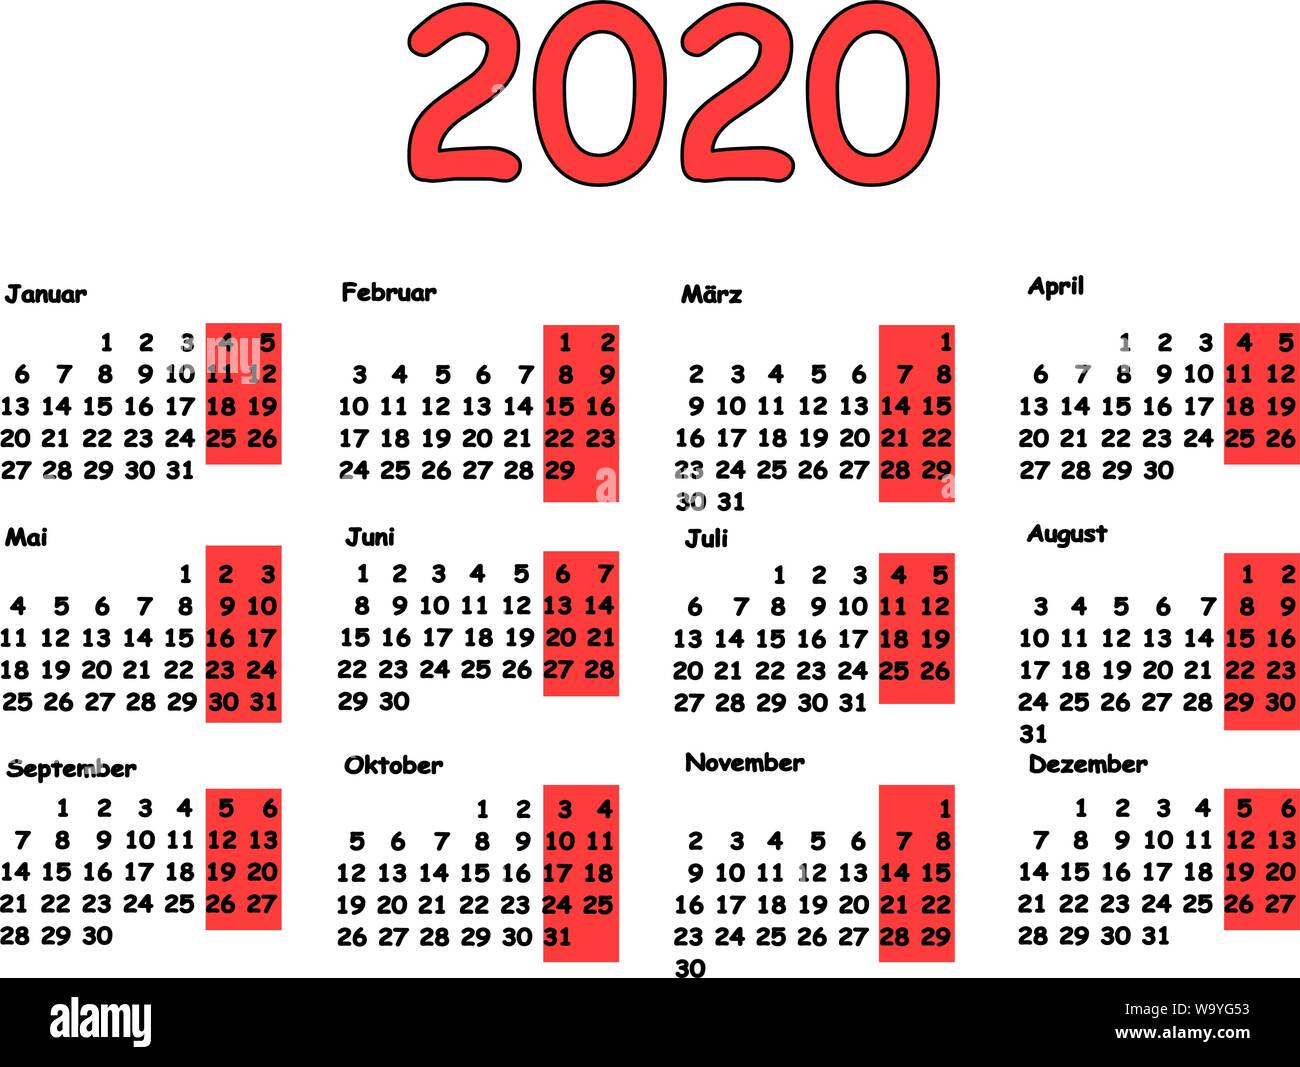 Kalender 2020 Grid deutscher Sprache. Monatliche Planung für das Jahr. Abbildung für Kalender Design. Stock Vektor